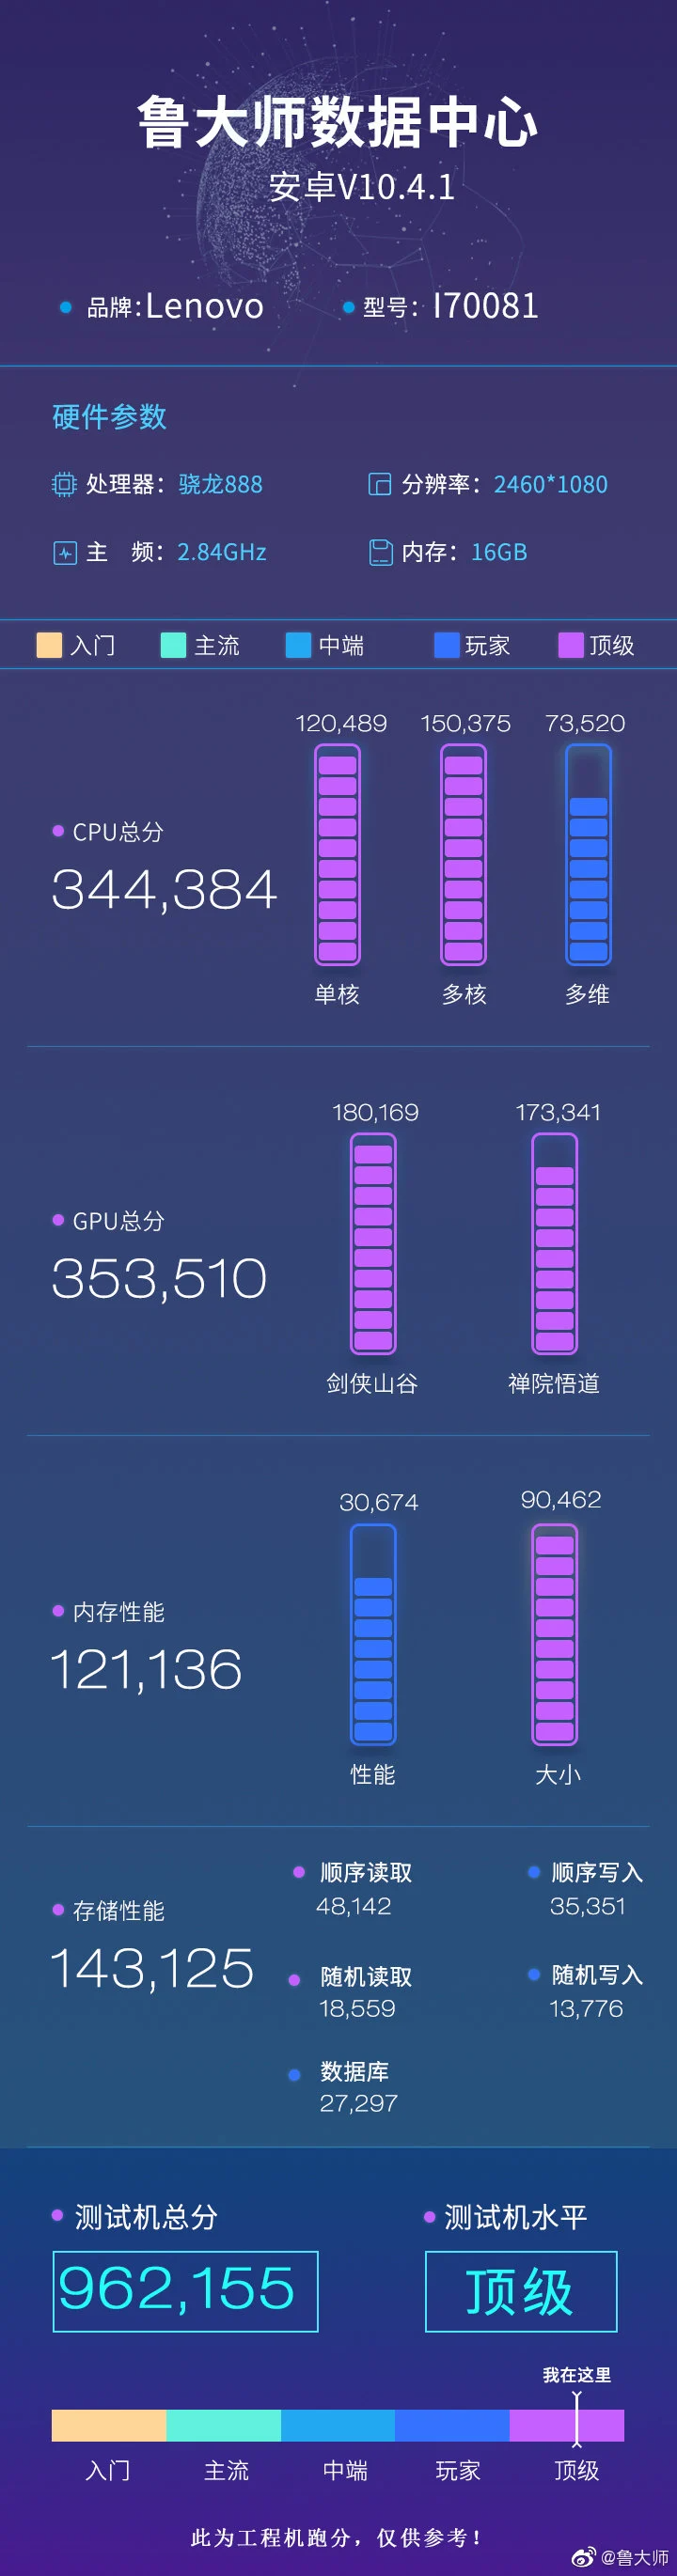 Lenovo Legion 2 Smartphone profissional Master Lu benchmark de pontuação (imagem via Gizmochina)